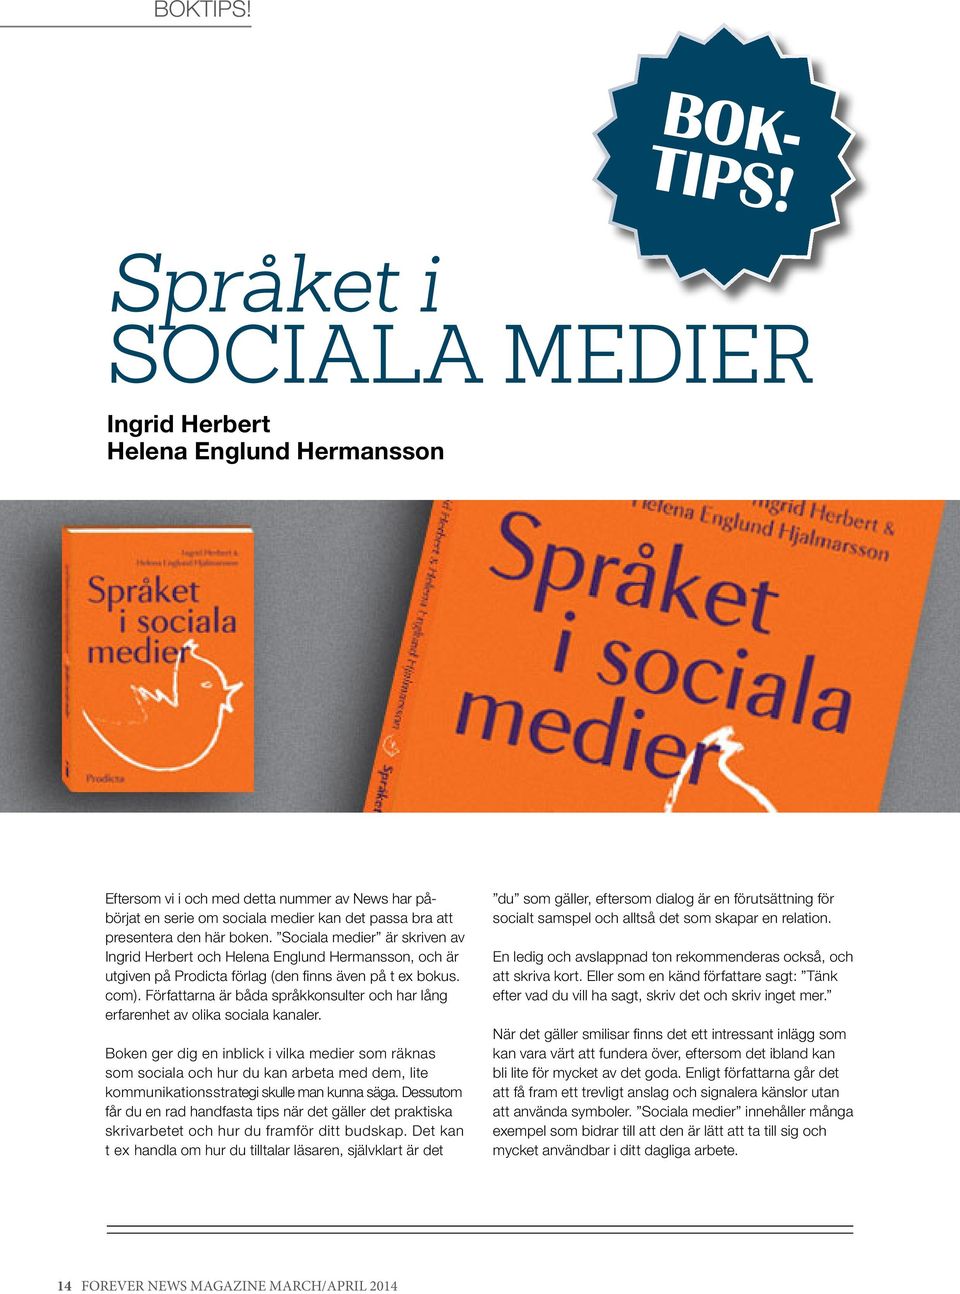 Sociala medier är skriven av Ingrid Herbert och Helena Englund Hermansson, och är utgiven på Prodicta förlag (den finns även på t ex bokus. com).